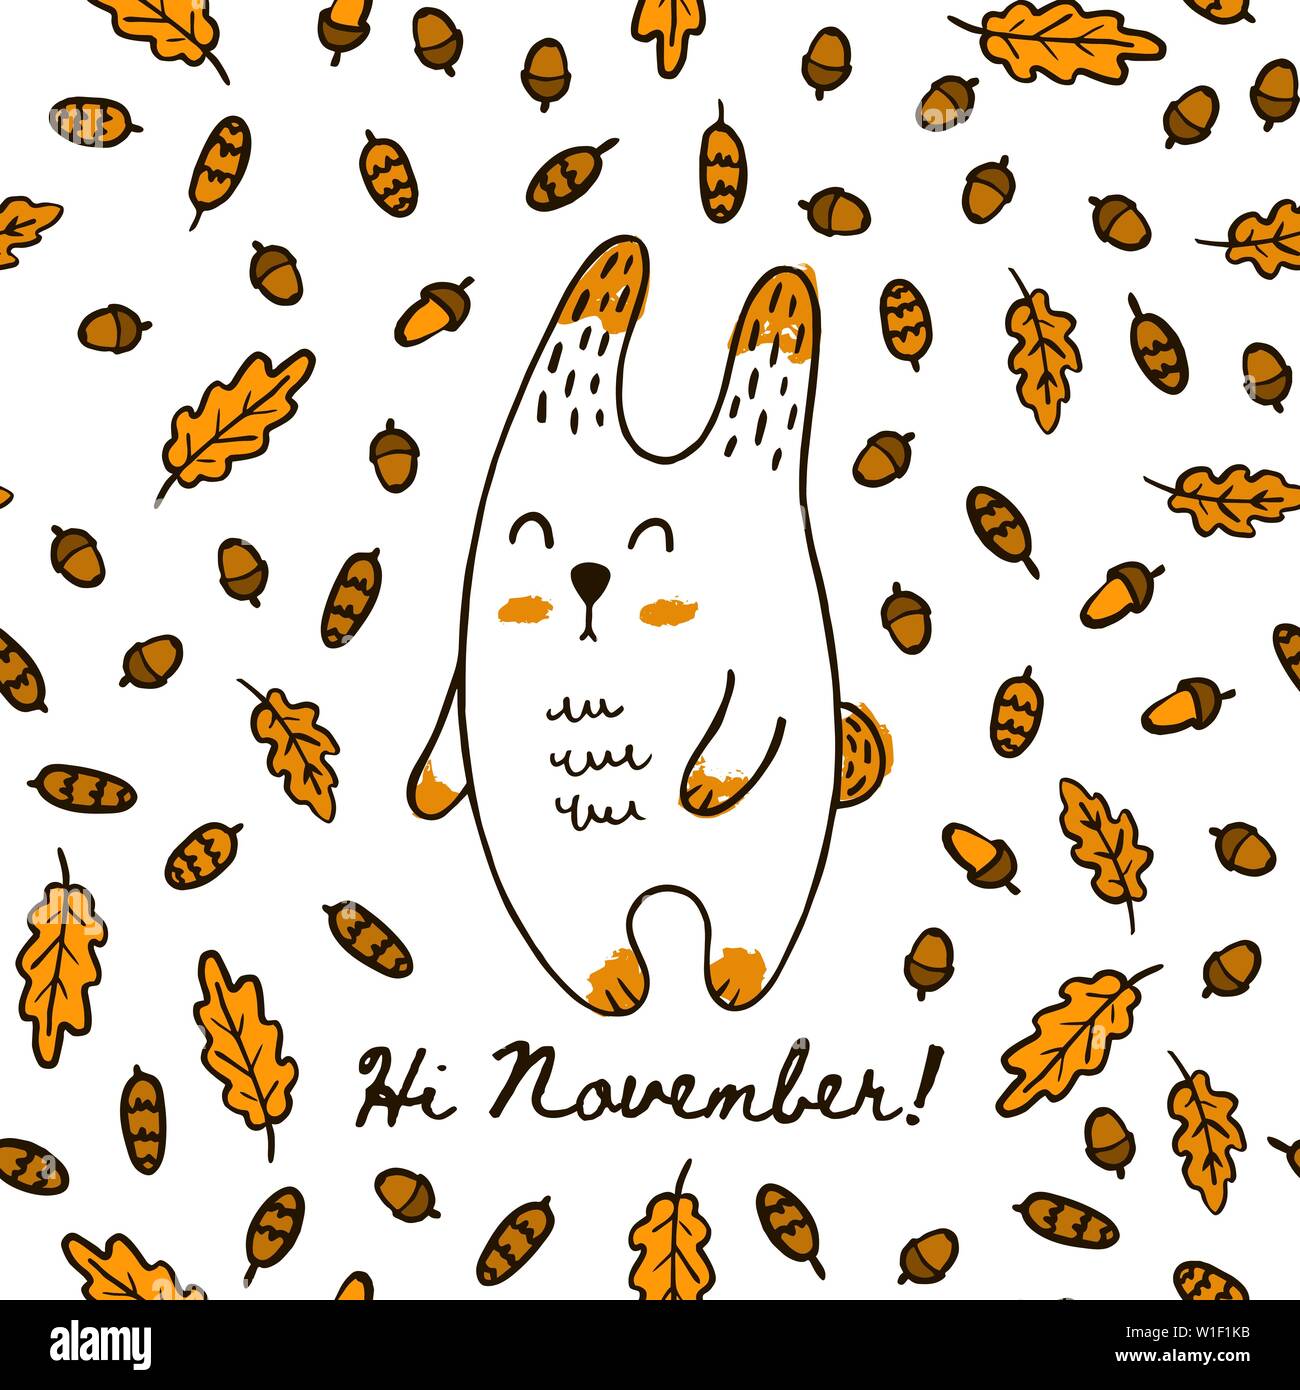 Thỏ tay vẽ mùa thu đáng yêu: Ai cũng muốn tạo ra những bức tranh đáng yêu và sinh động, đúng không? Hãy cùng với thỏ tay vẽ trẻ trung này, tìm ra sự dễ thương và ấm áp của mùa thu nhé!